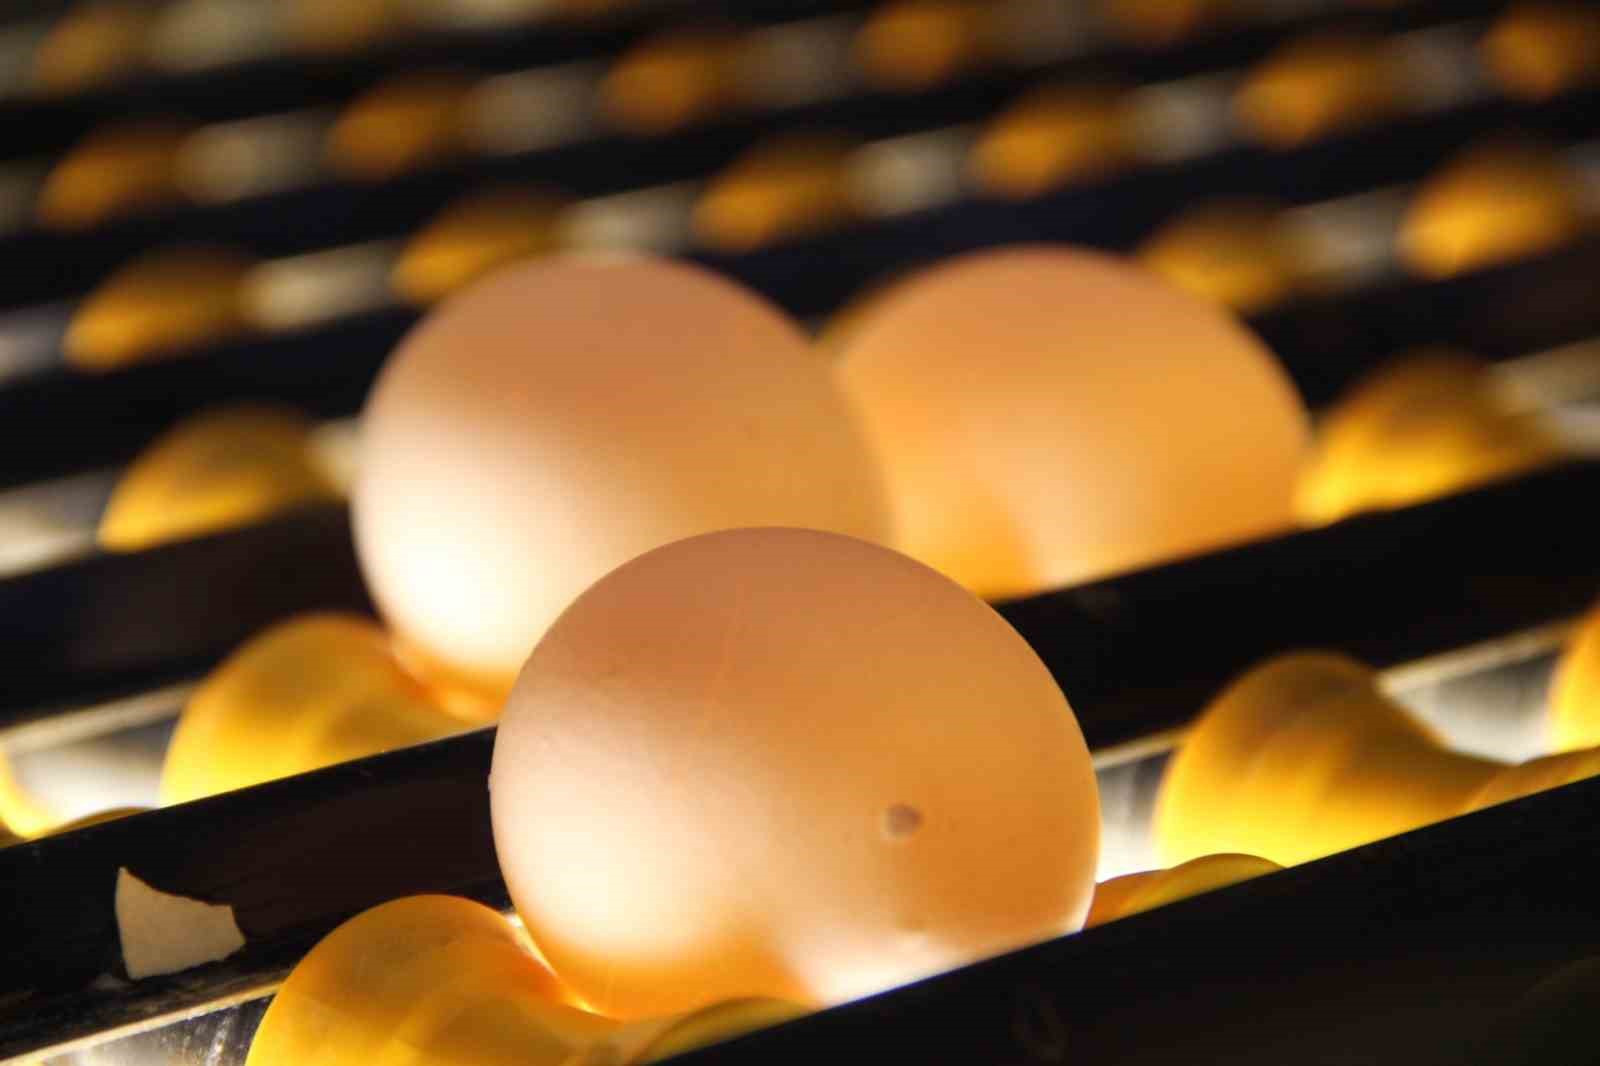 Ureticiler Yumurta Fiyatlarinin Yukselmesinden Aracilari Sorumlu Tuttu 1 Gstfn4E3